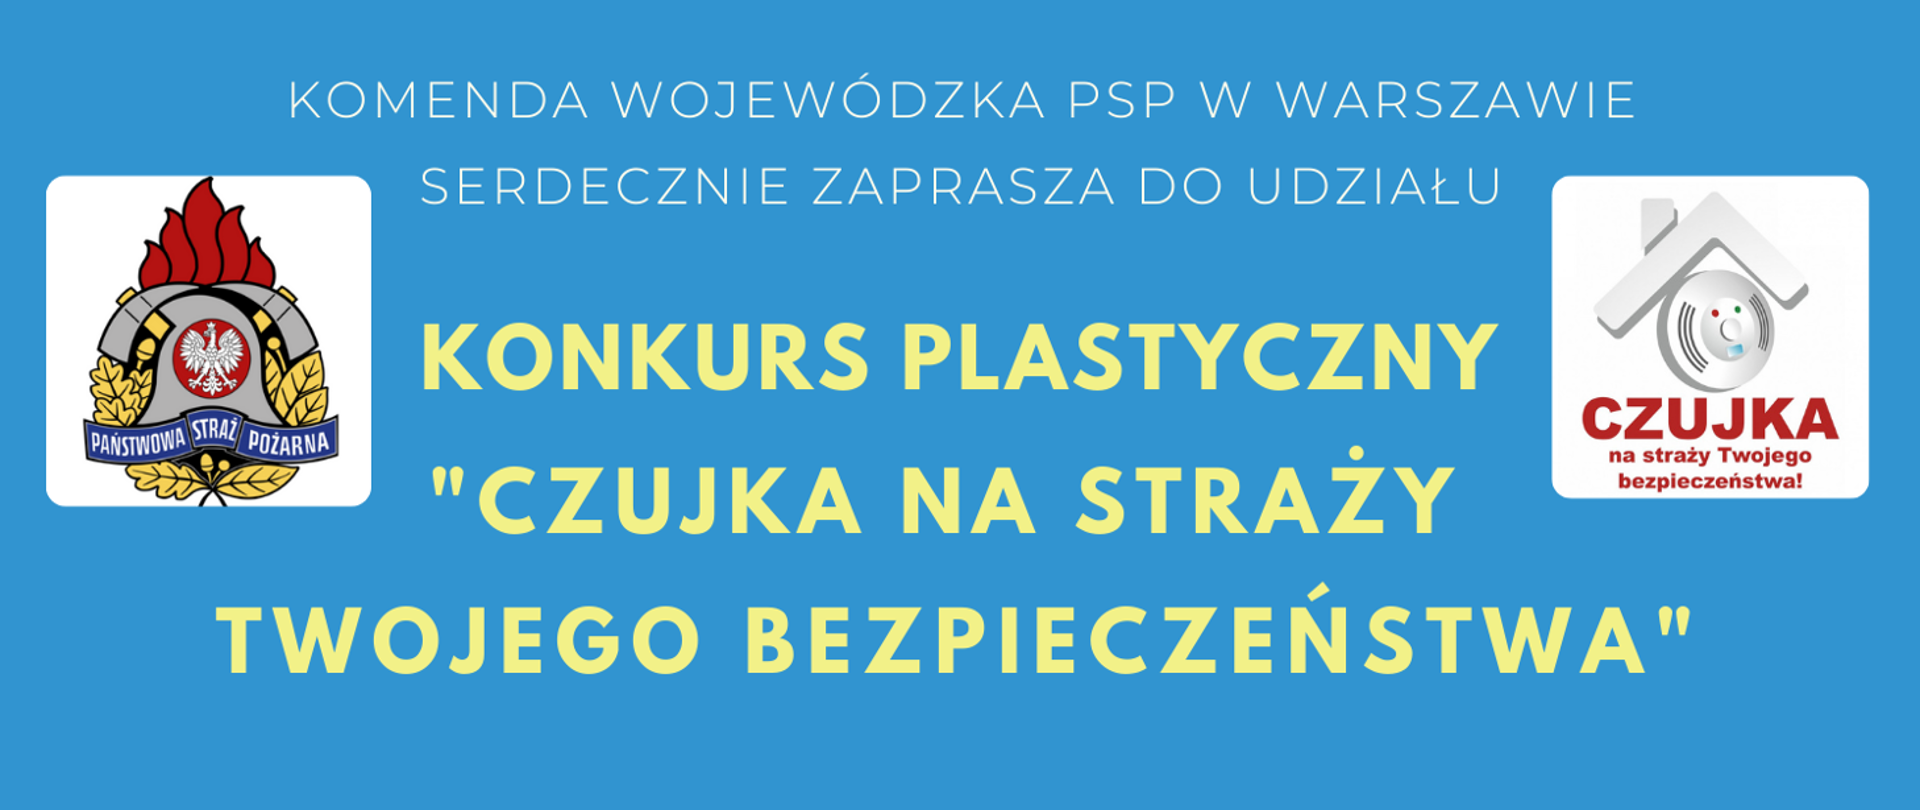 Baner z informacja o konkursie plastycznym organizowanym przez Komendę Wojewódzką Państwowej Straży Pożarnej w Warszawie. Żółte i białe napisany na niebieskim tle. Po lewej stronie logo PSP, po prawej czujka na straży Twojego bezpieczeństwa.